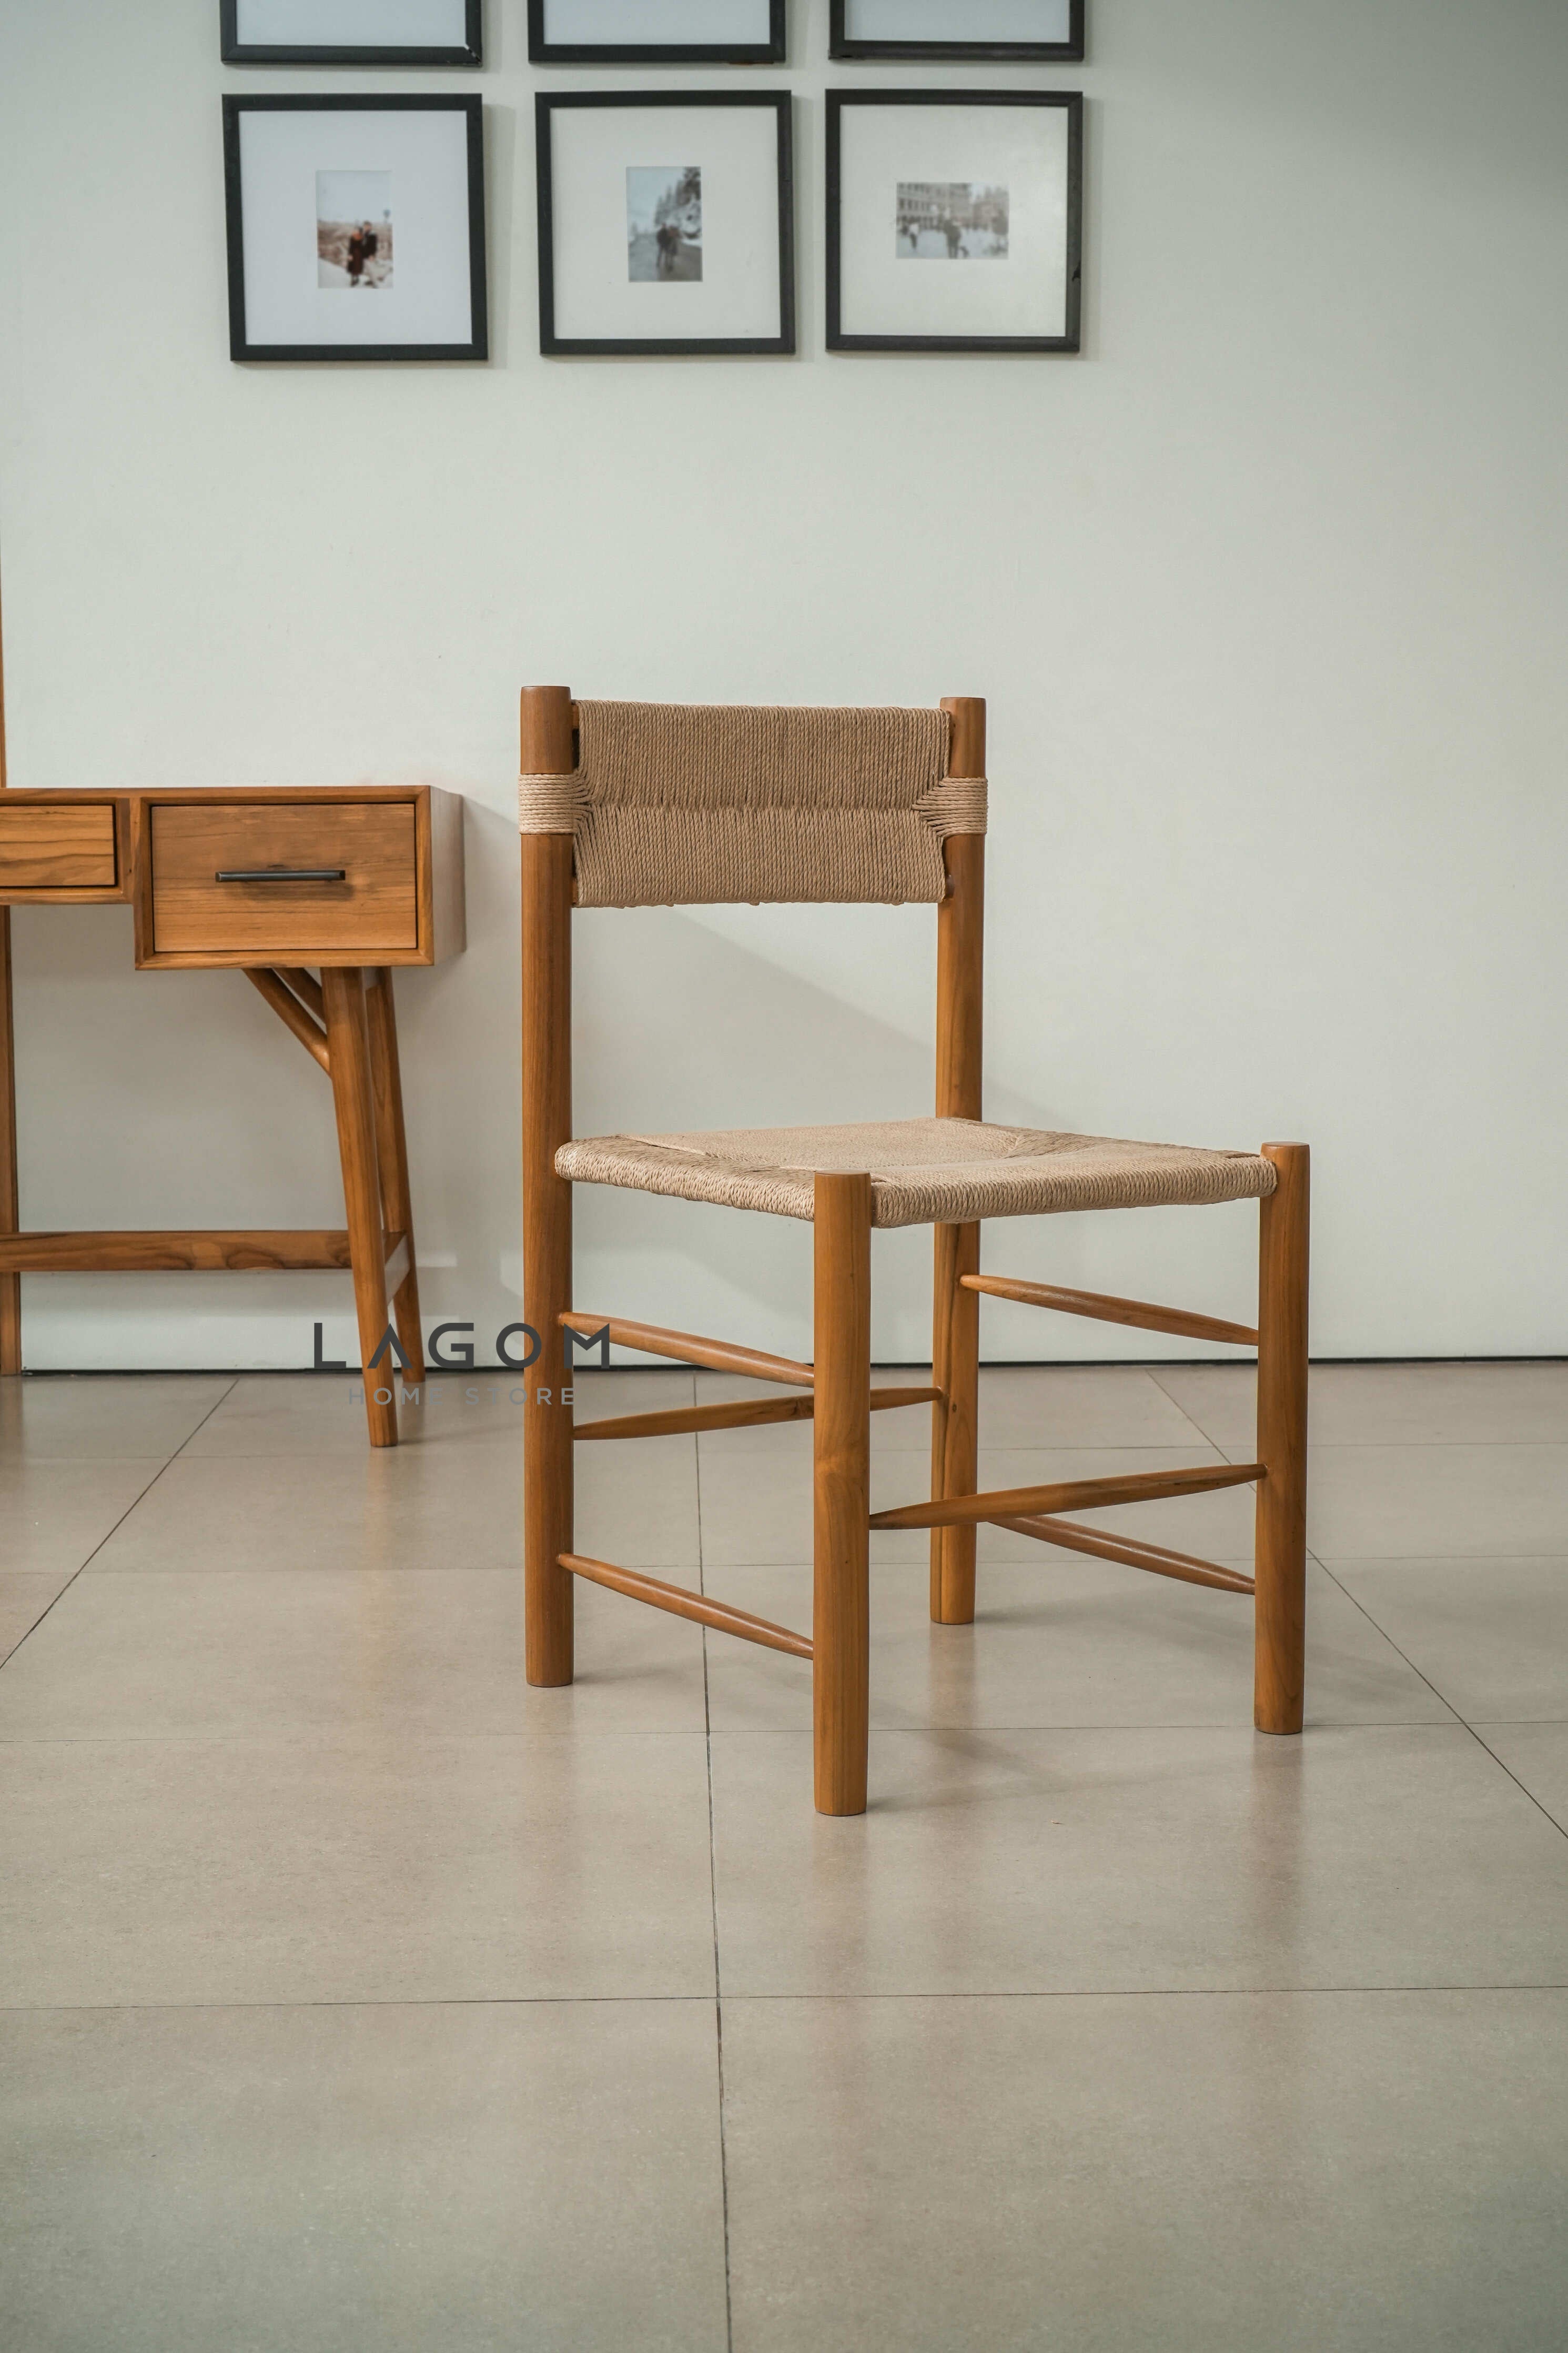 Kursi Kerja dan Makan Kayu Jati Solid dengan Loom Premium Chair Lagom Home Store Jati Furnitur Teak Furniture Jakarta